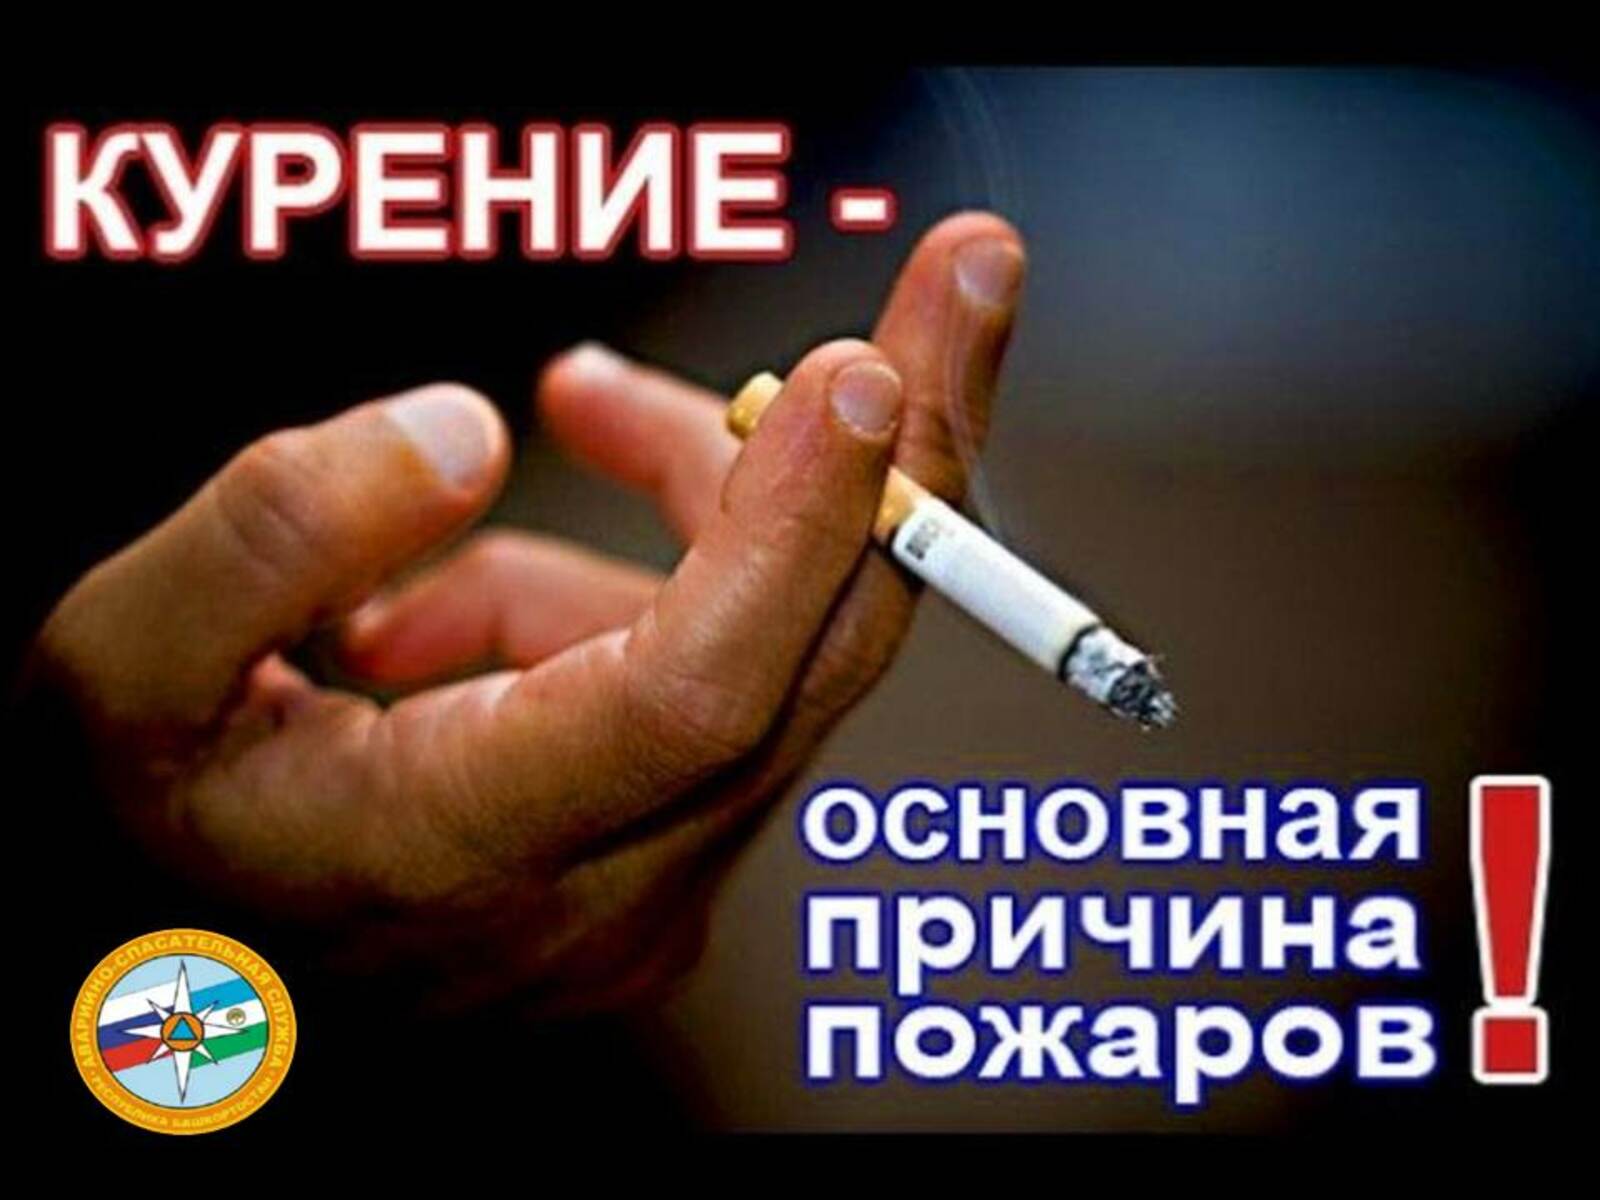 Курение – основная причина пожара!